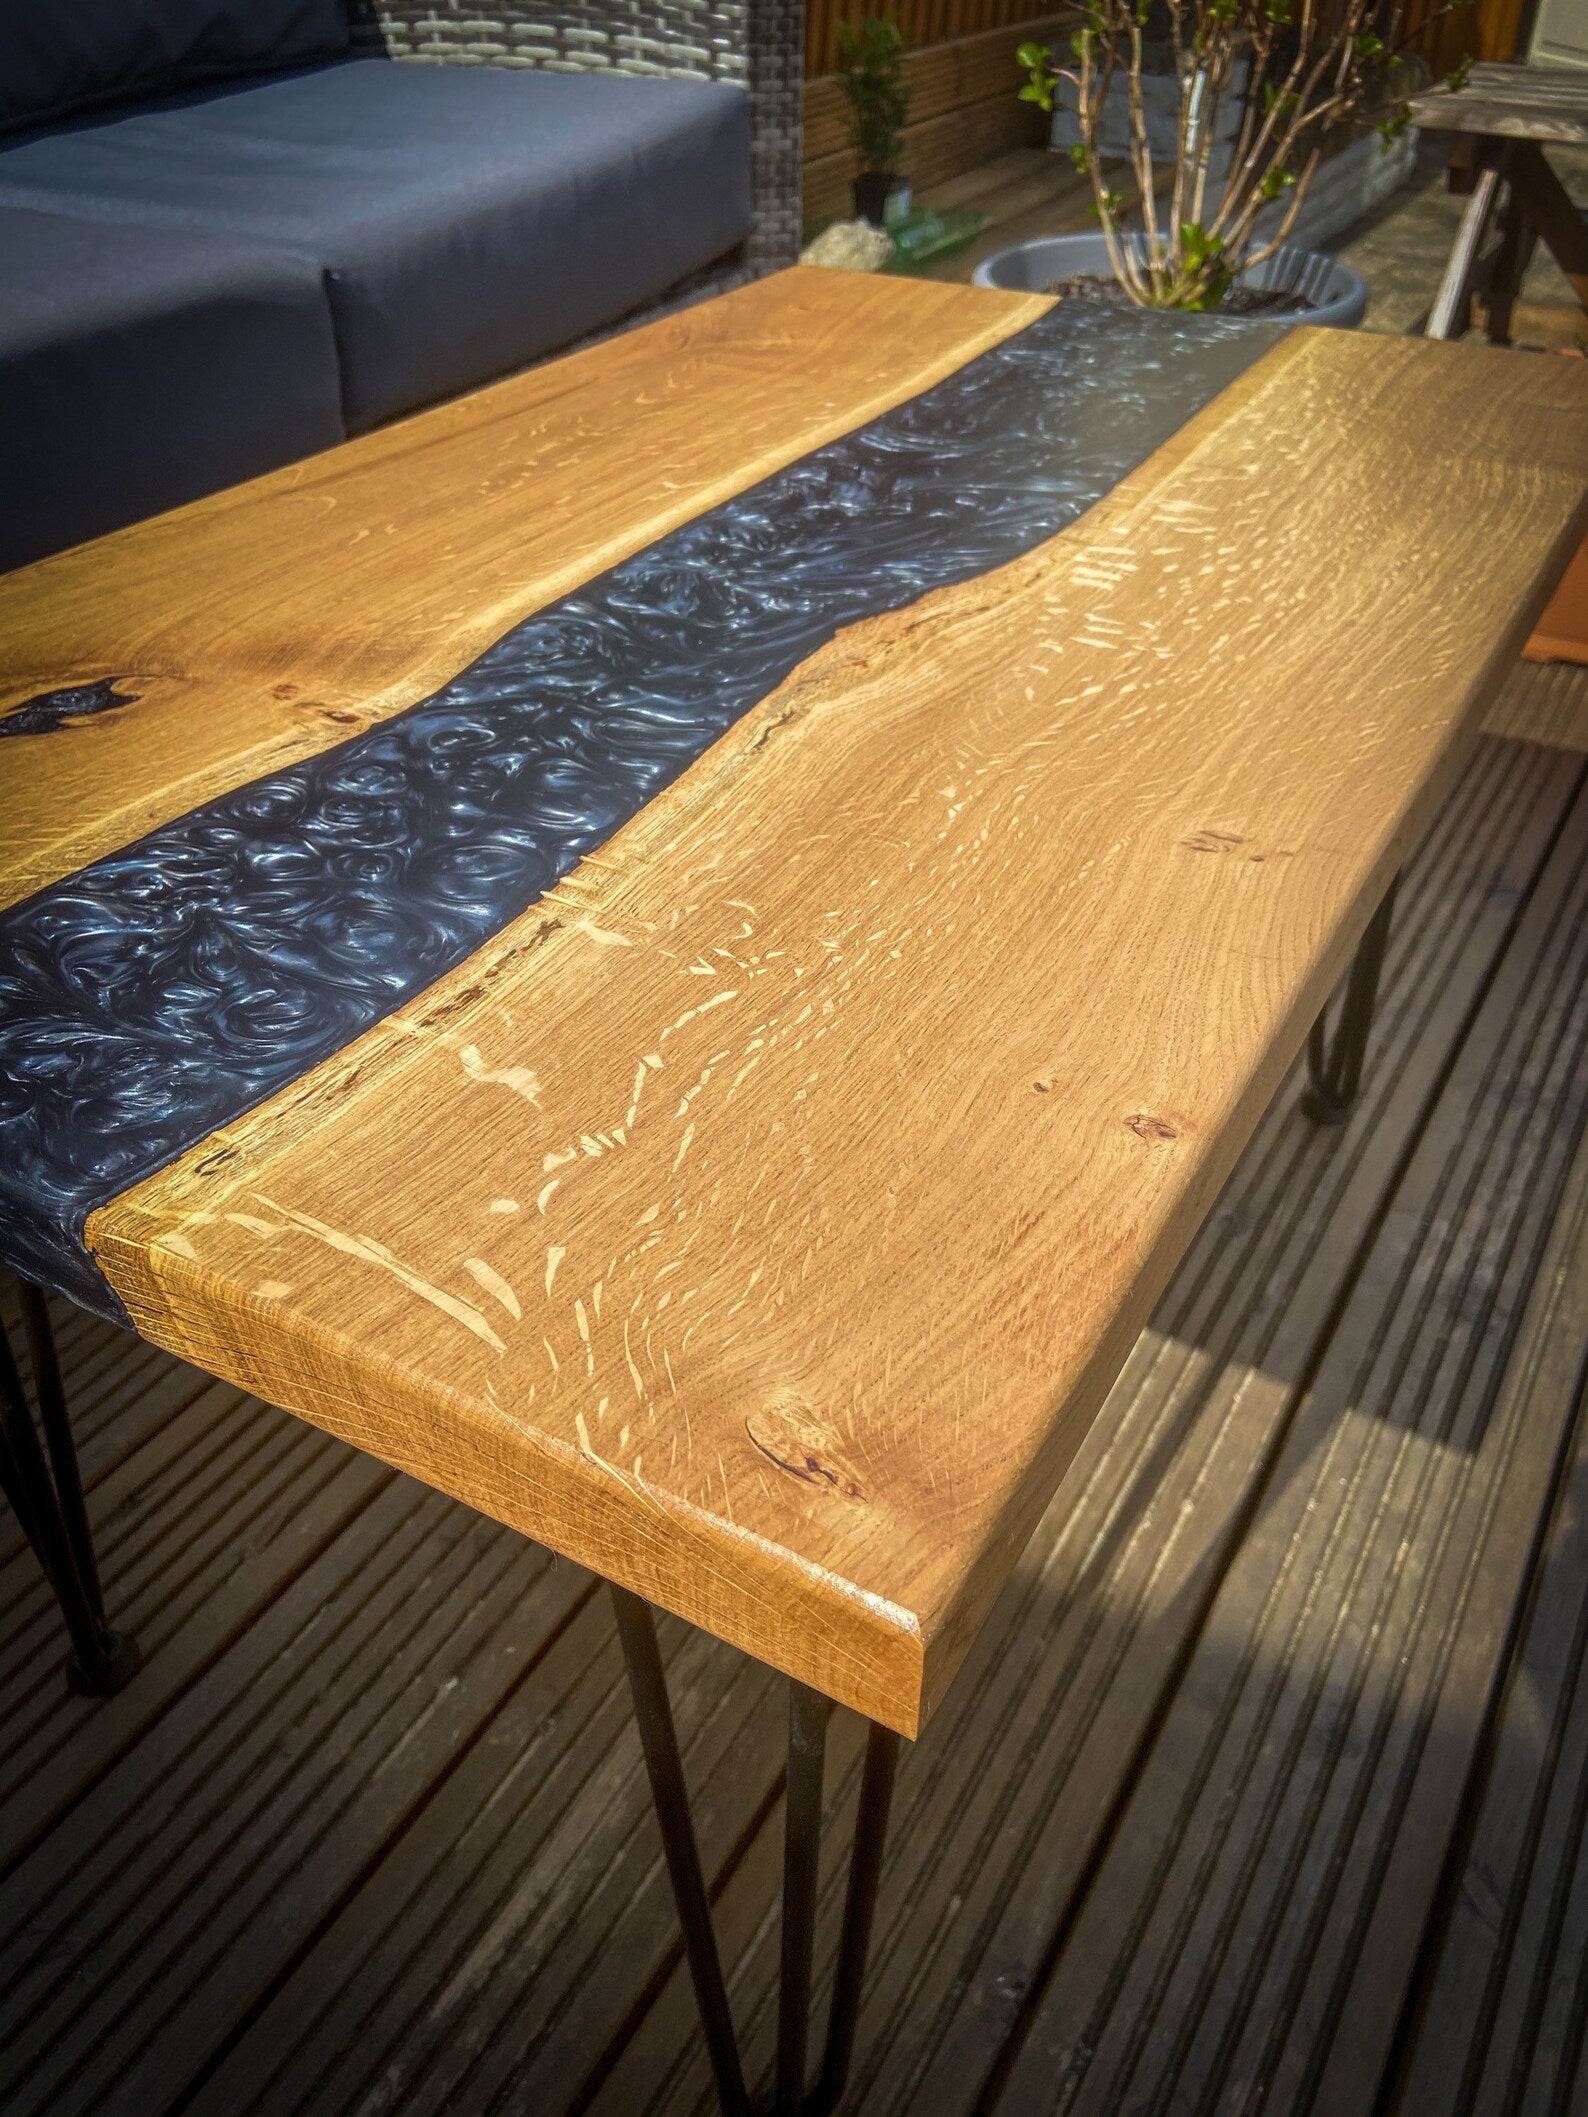 Oak Luxury Black Epoxy Table - On Wooden